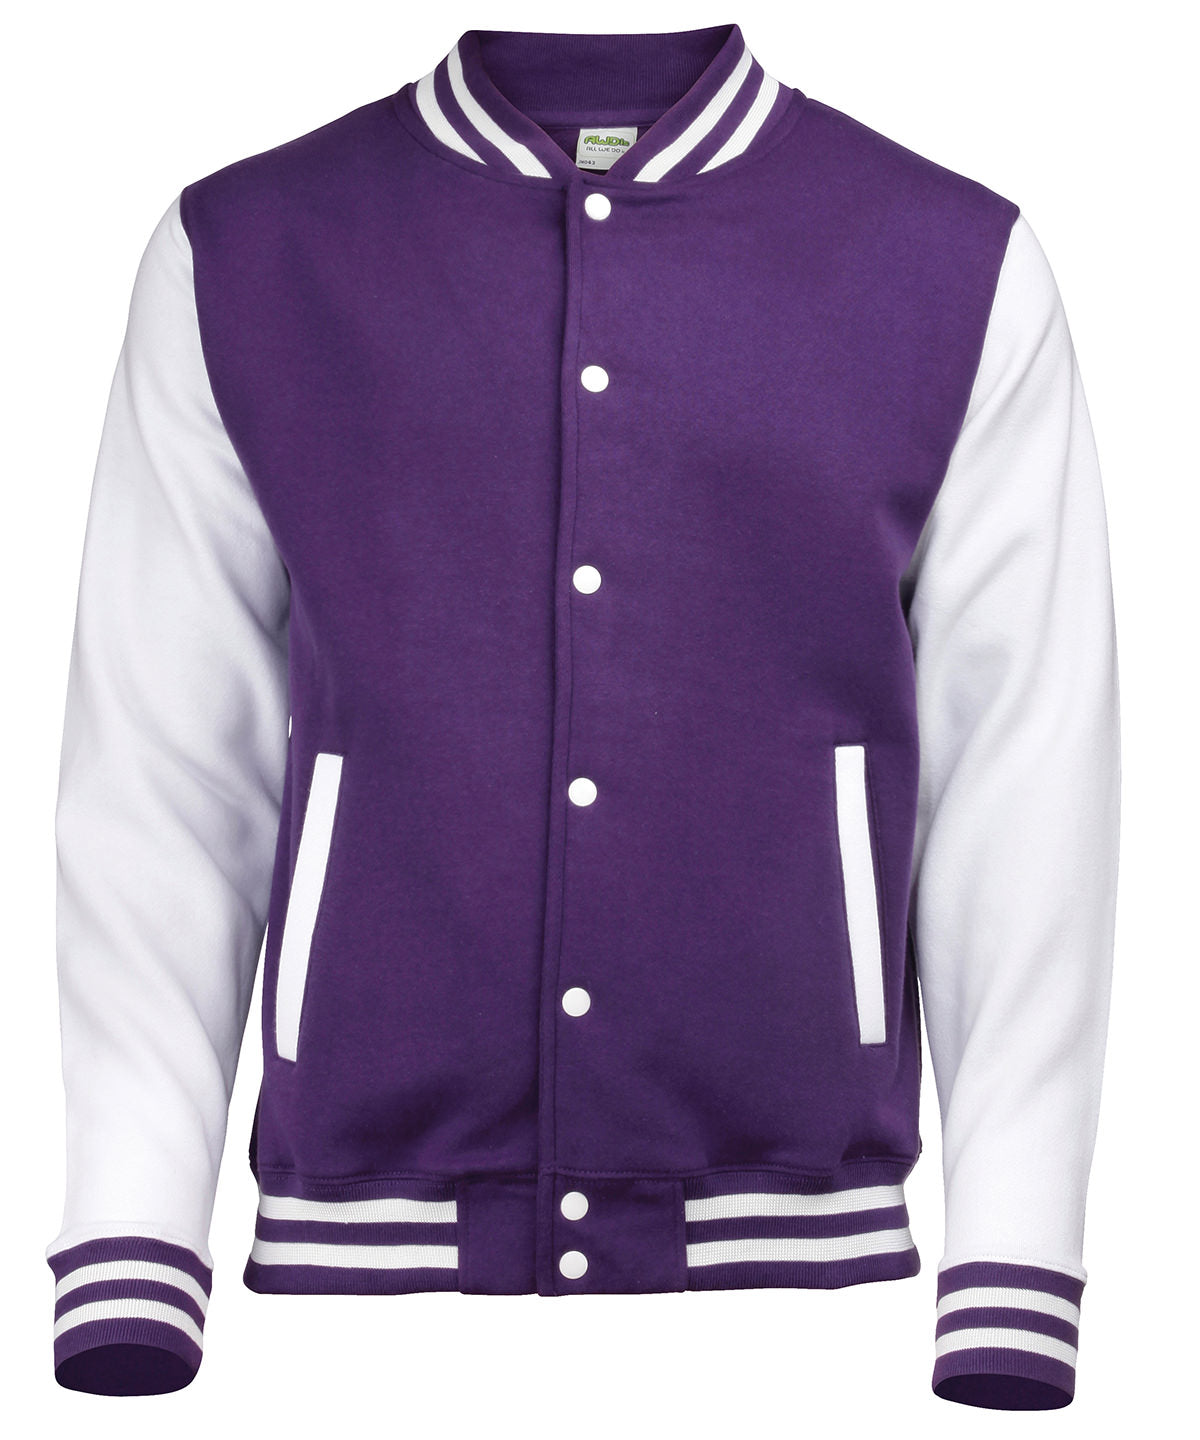 Personalised Jackets - Heather Grey AWDis Just Hoods Varsity jacket